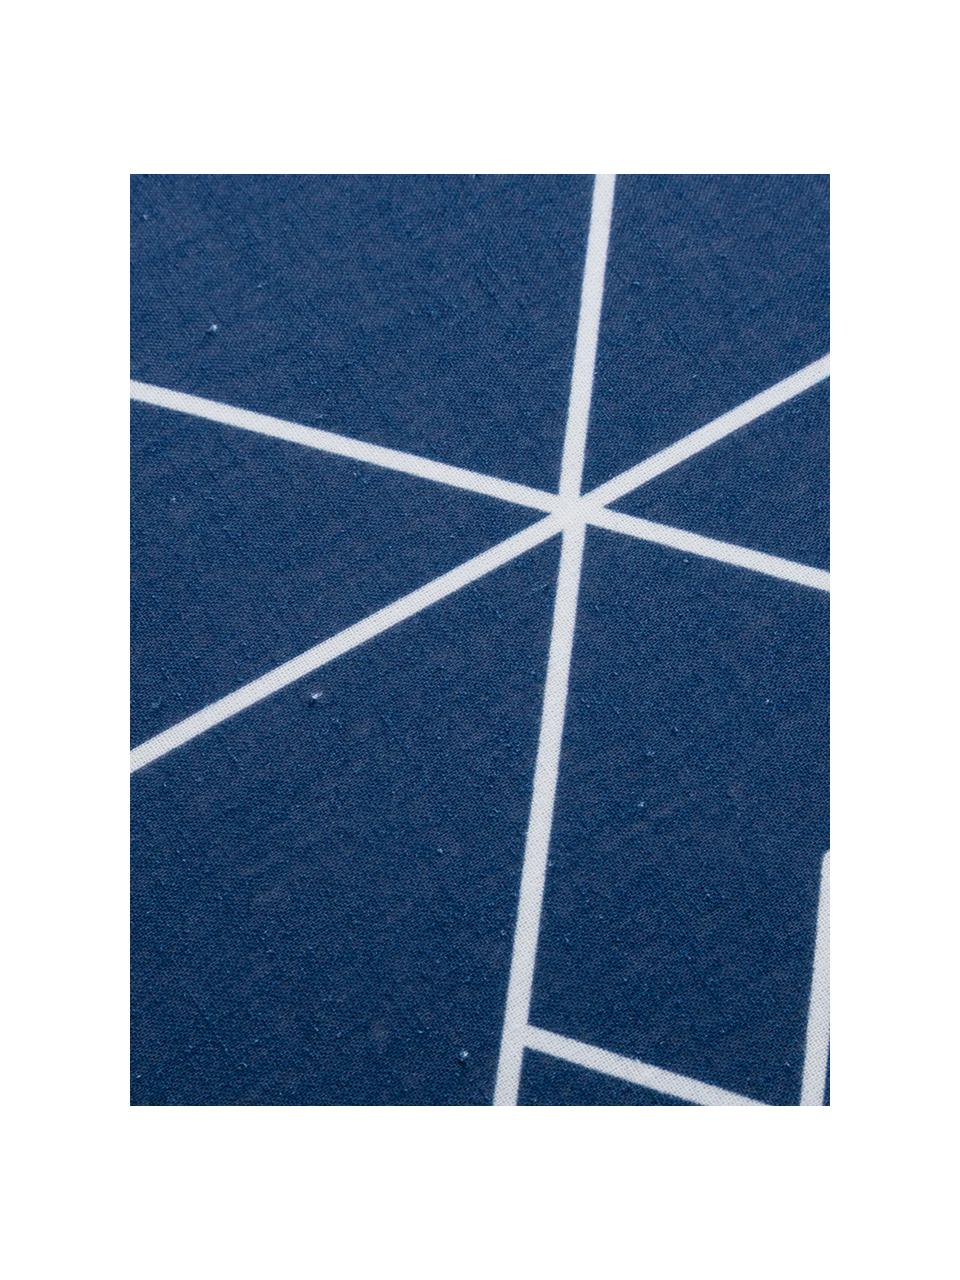 Dubbelzijdig beddengoed Meraki, Katoen, Donkerblauw, lichtblauw, wit, 240 x 220 cm + 2 kussenhoezen 60 x 70 cm